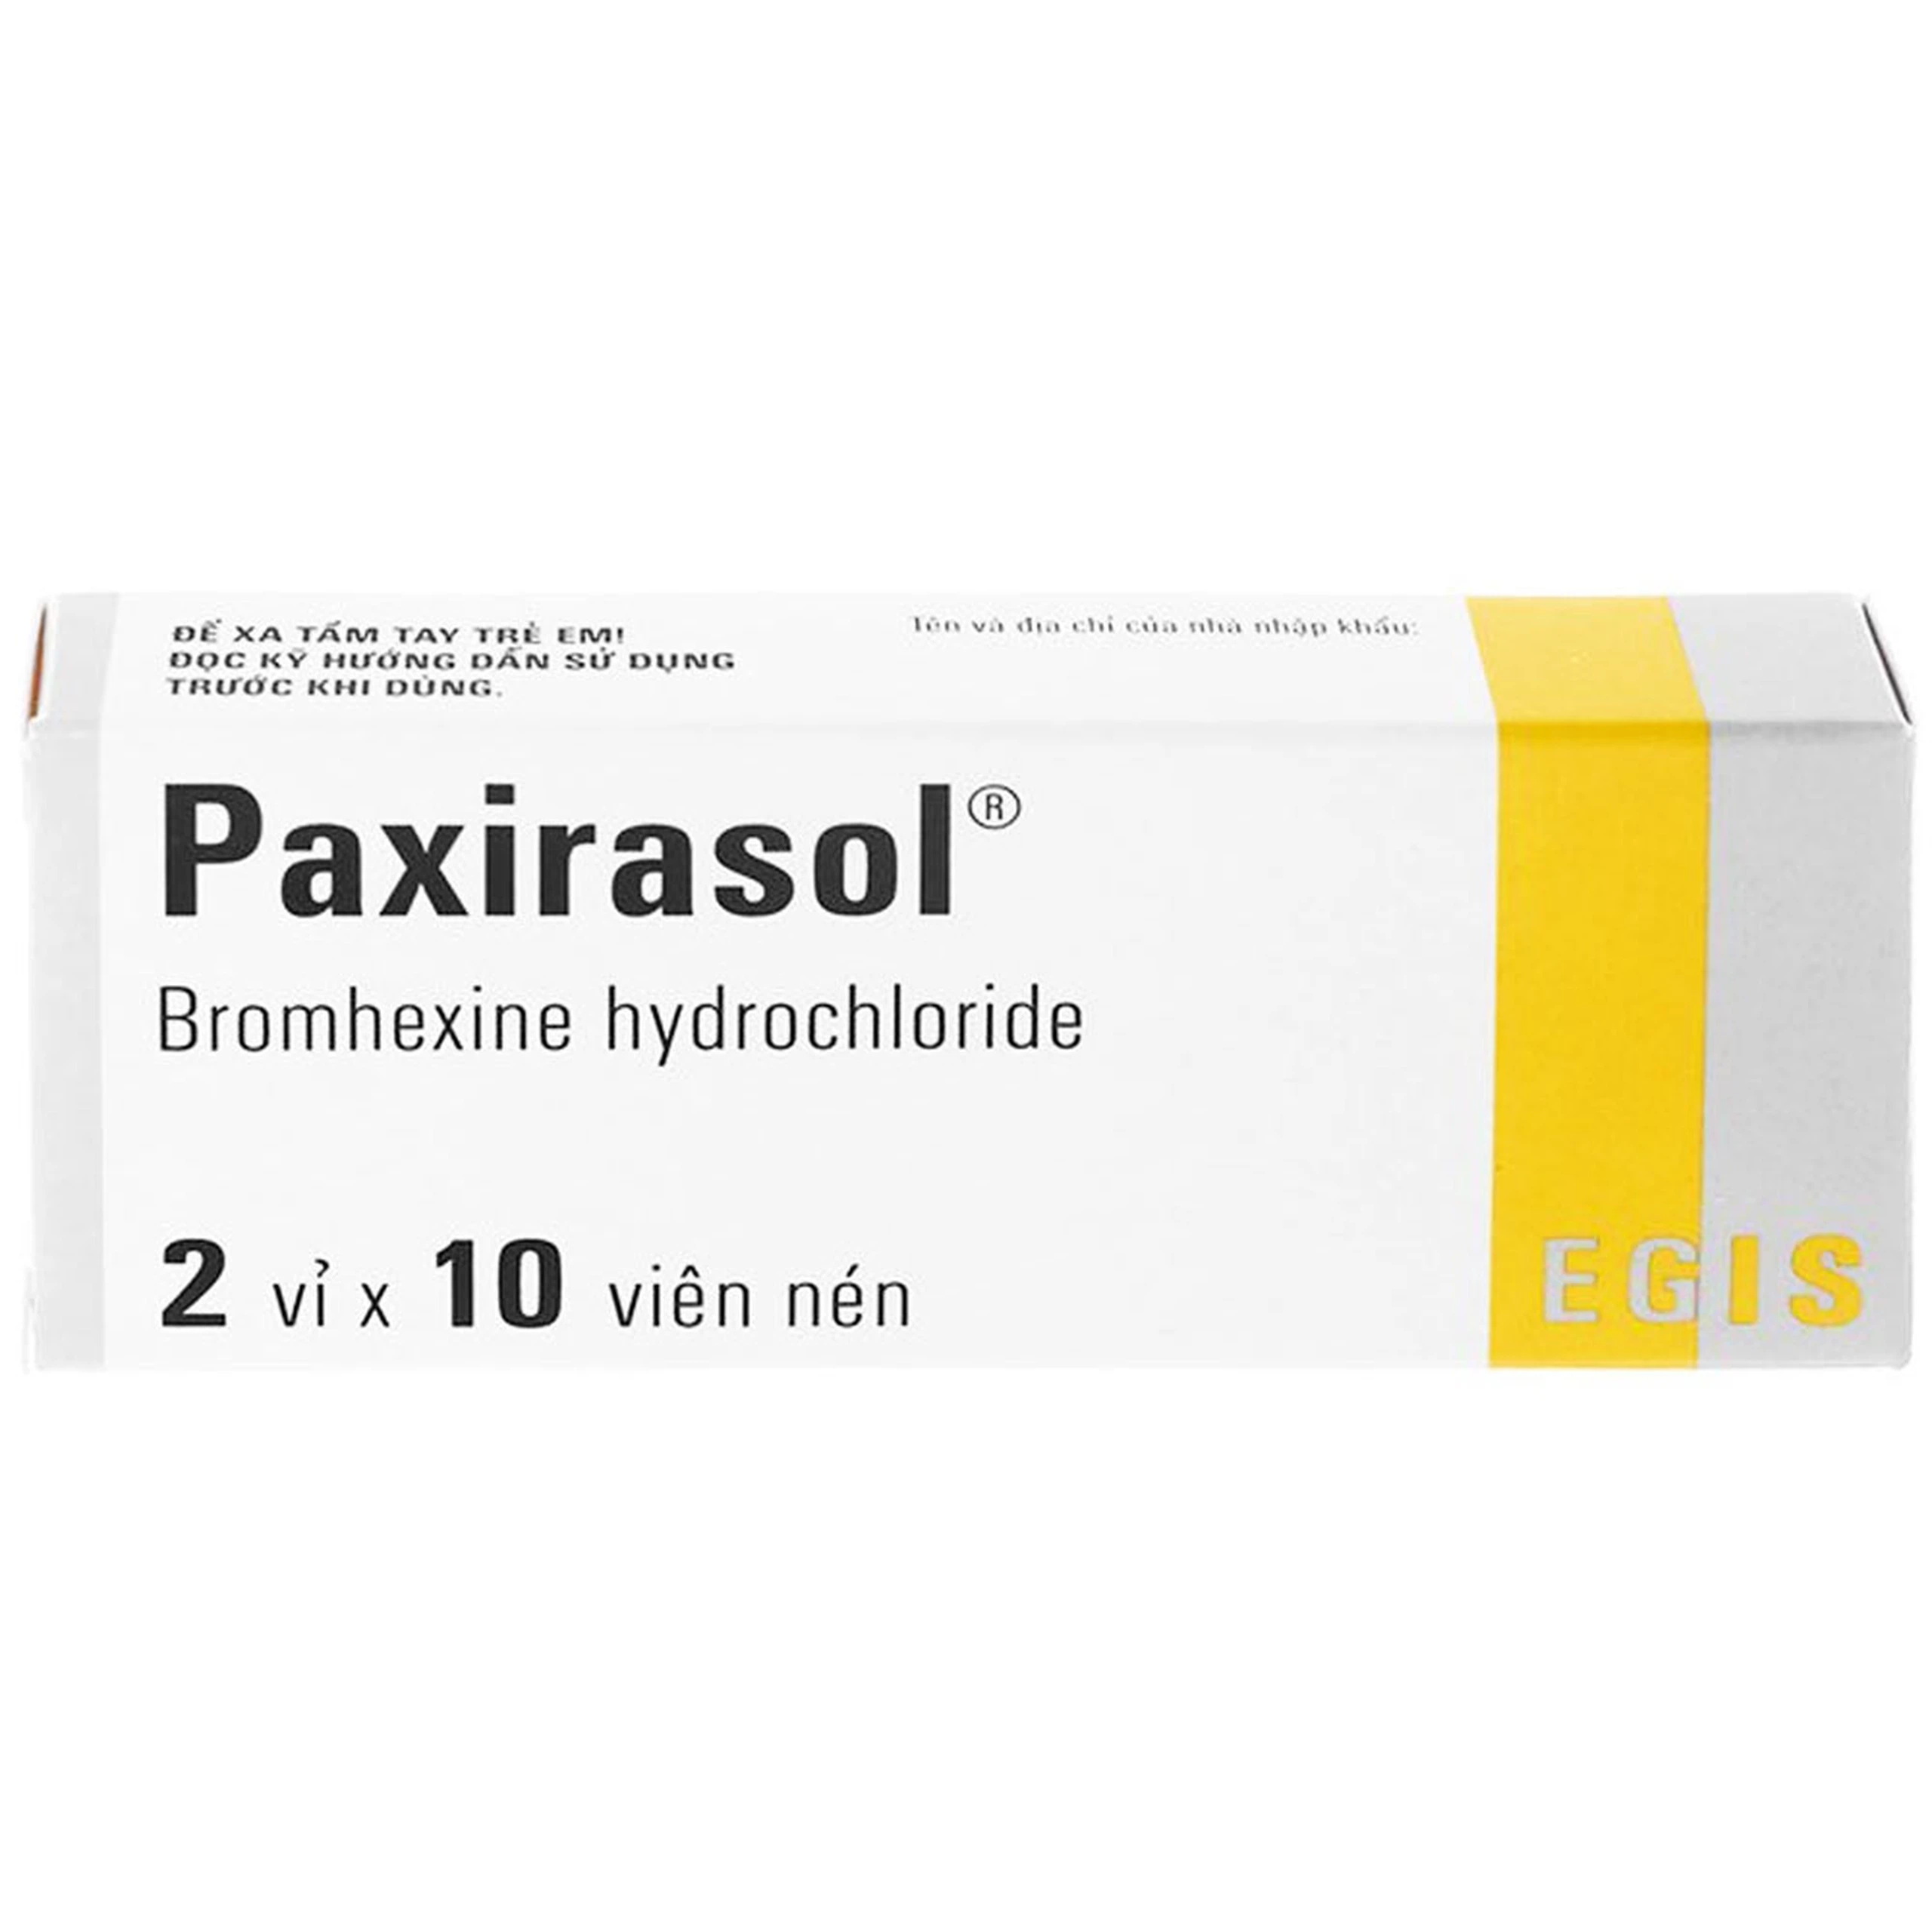 Thuốc Paxirasol Egis hỗ trợ làm tan chất nhầy trong bệnh lý hô hấp (20 viên)